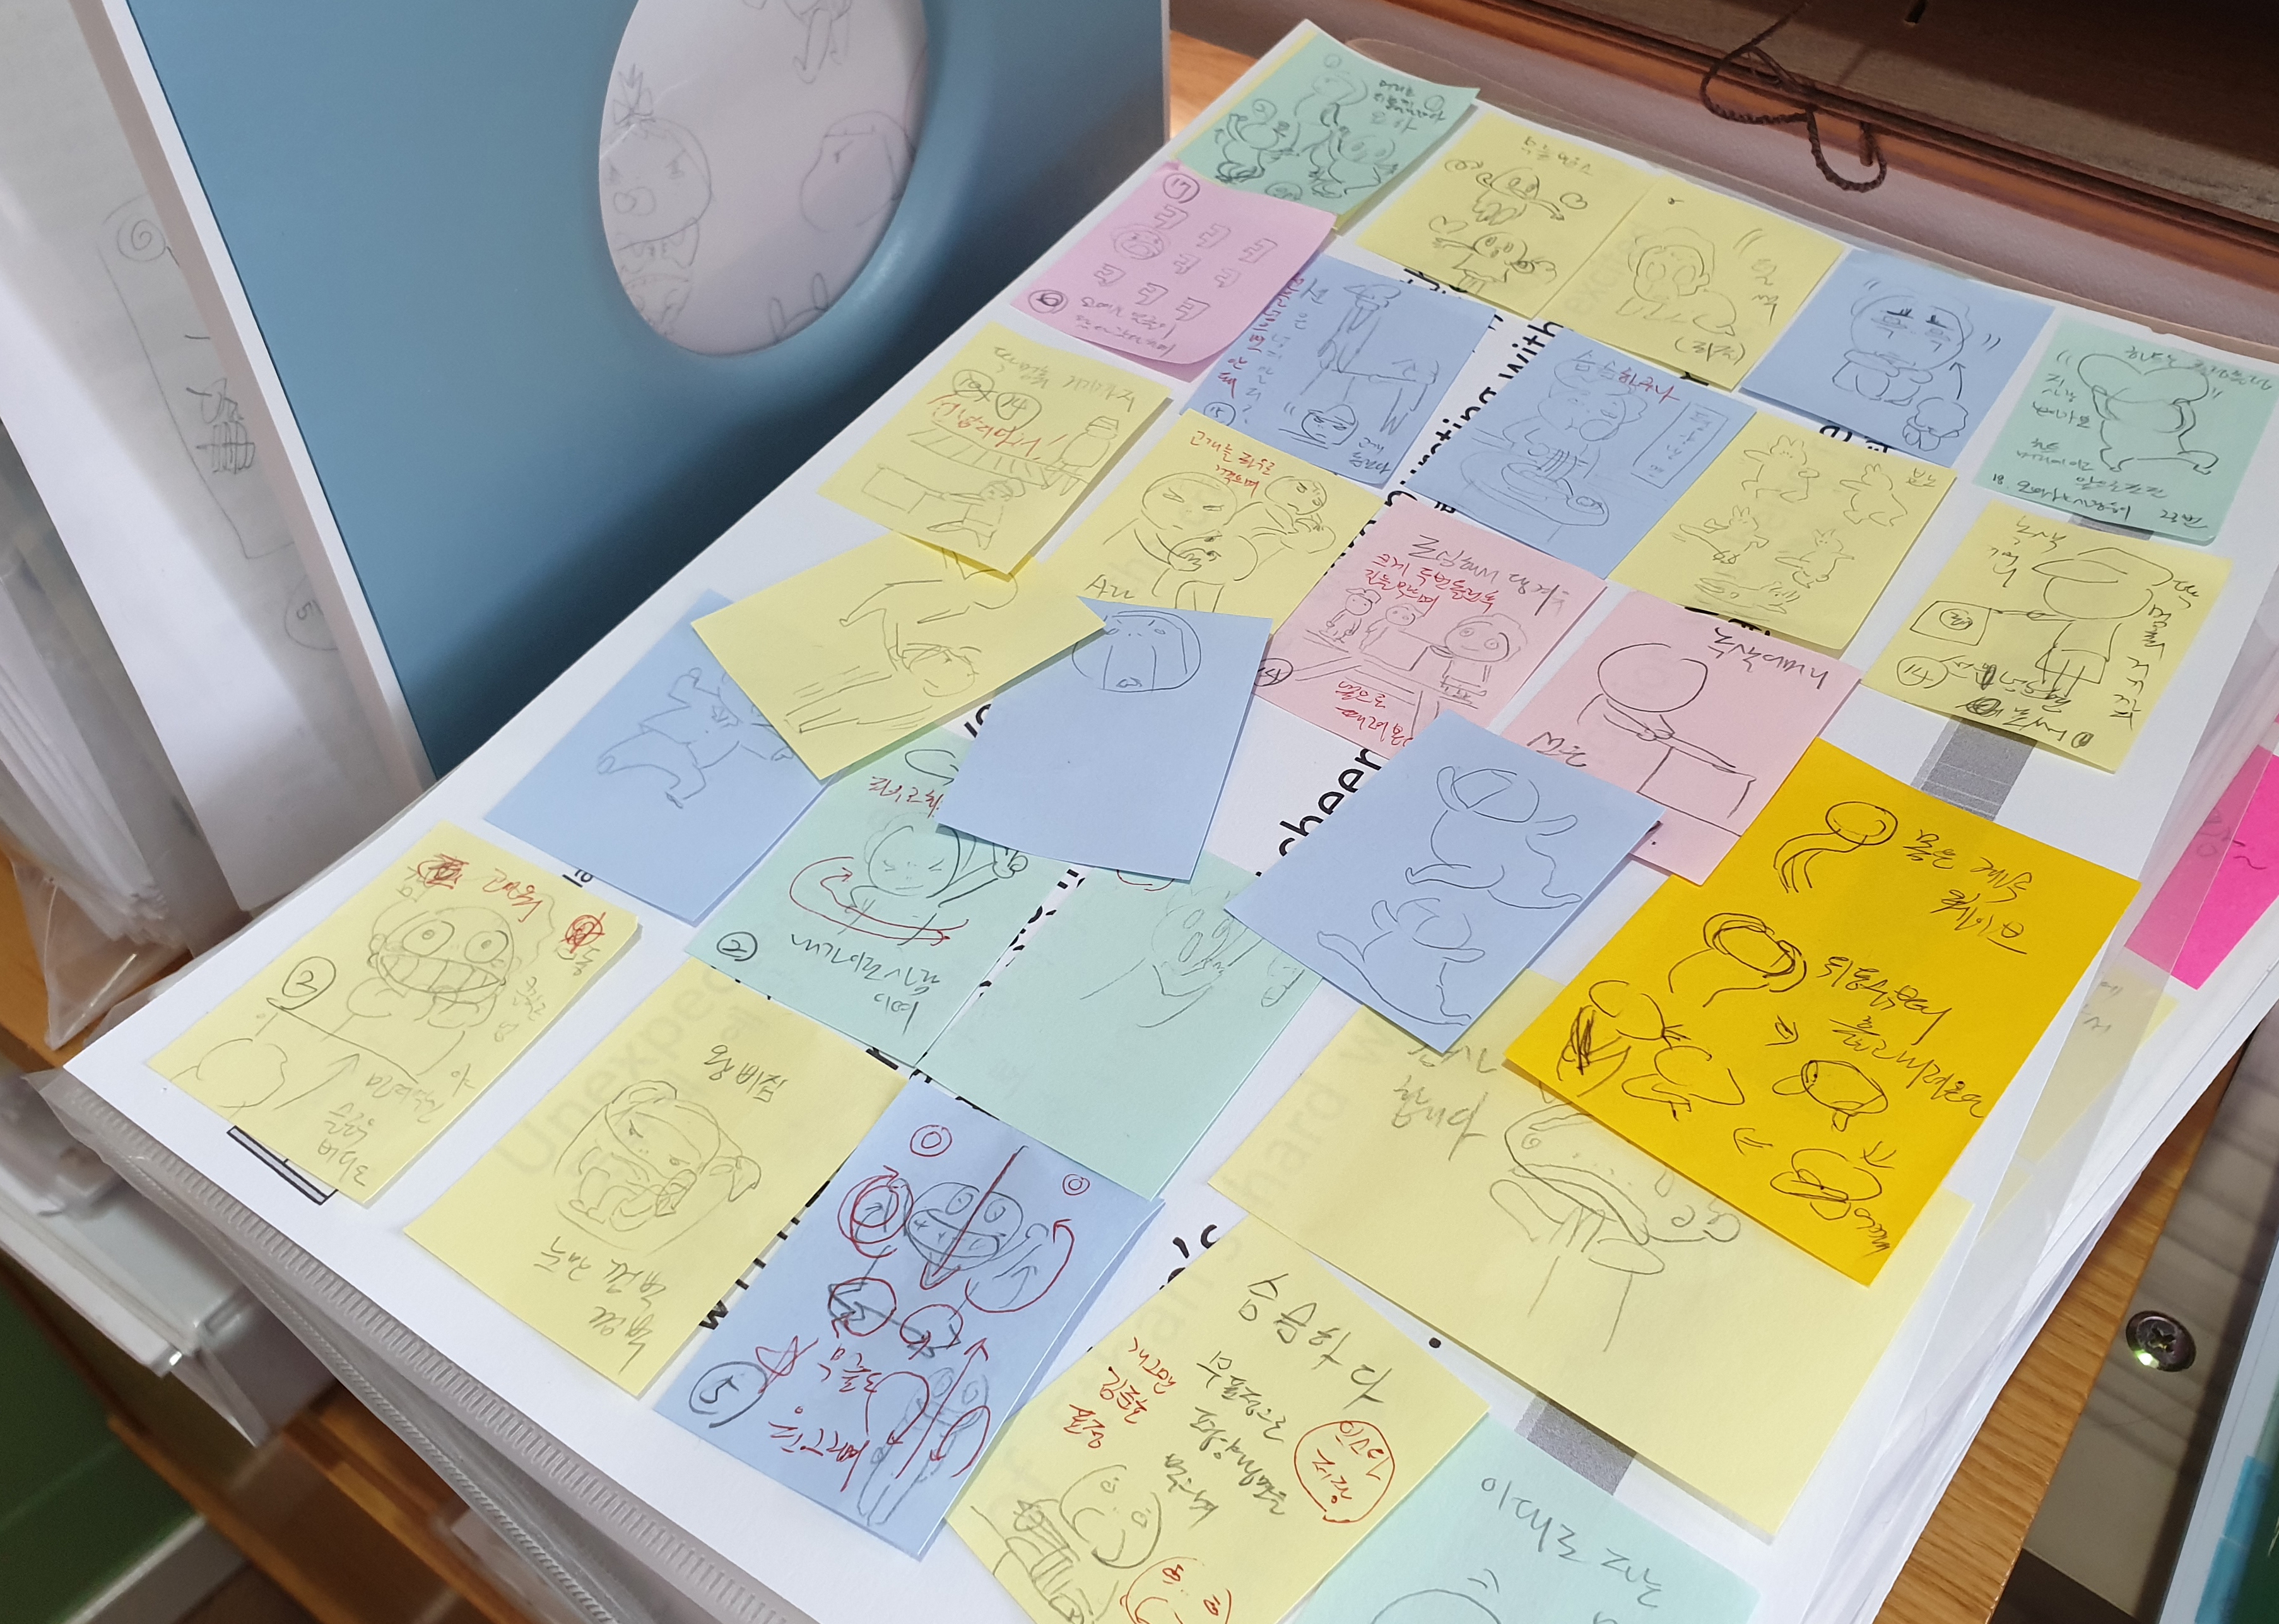 아포이 작가가 떠오르는 아이디어를 놓치지 않기 위해 포스트잇에 메모해 둔 것을 모아놓았다.